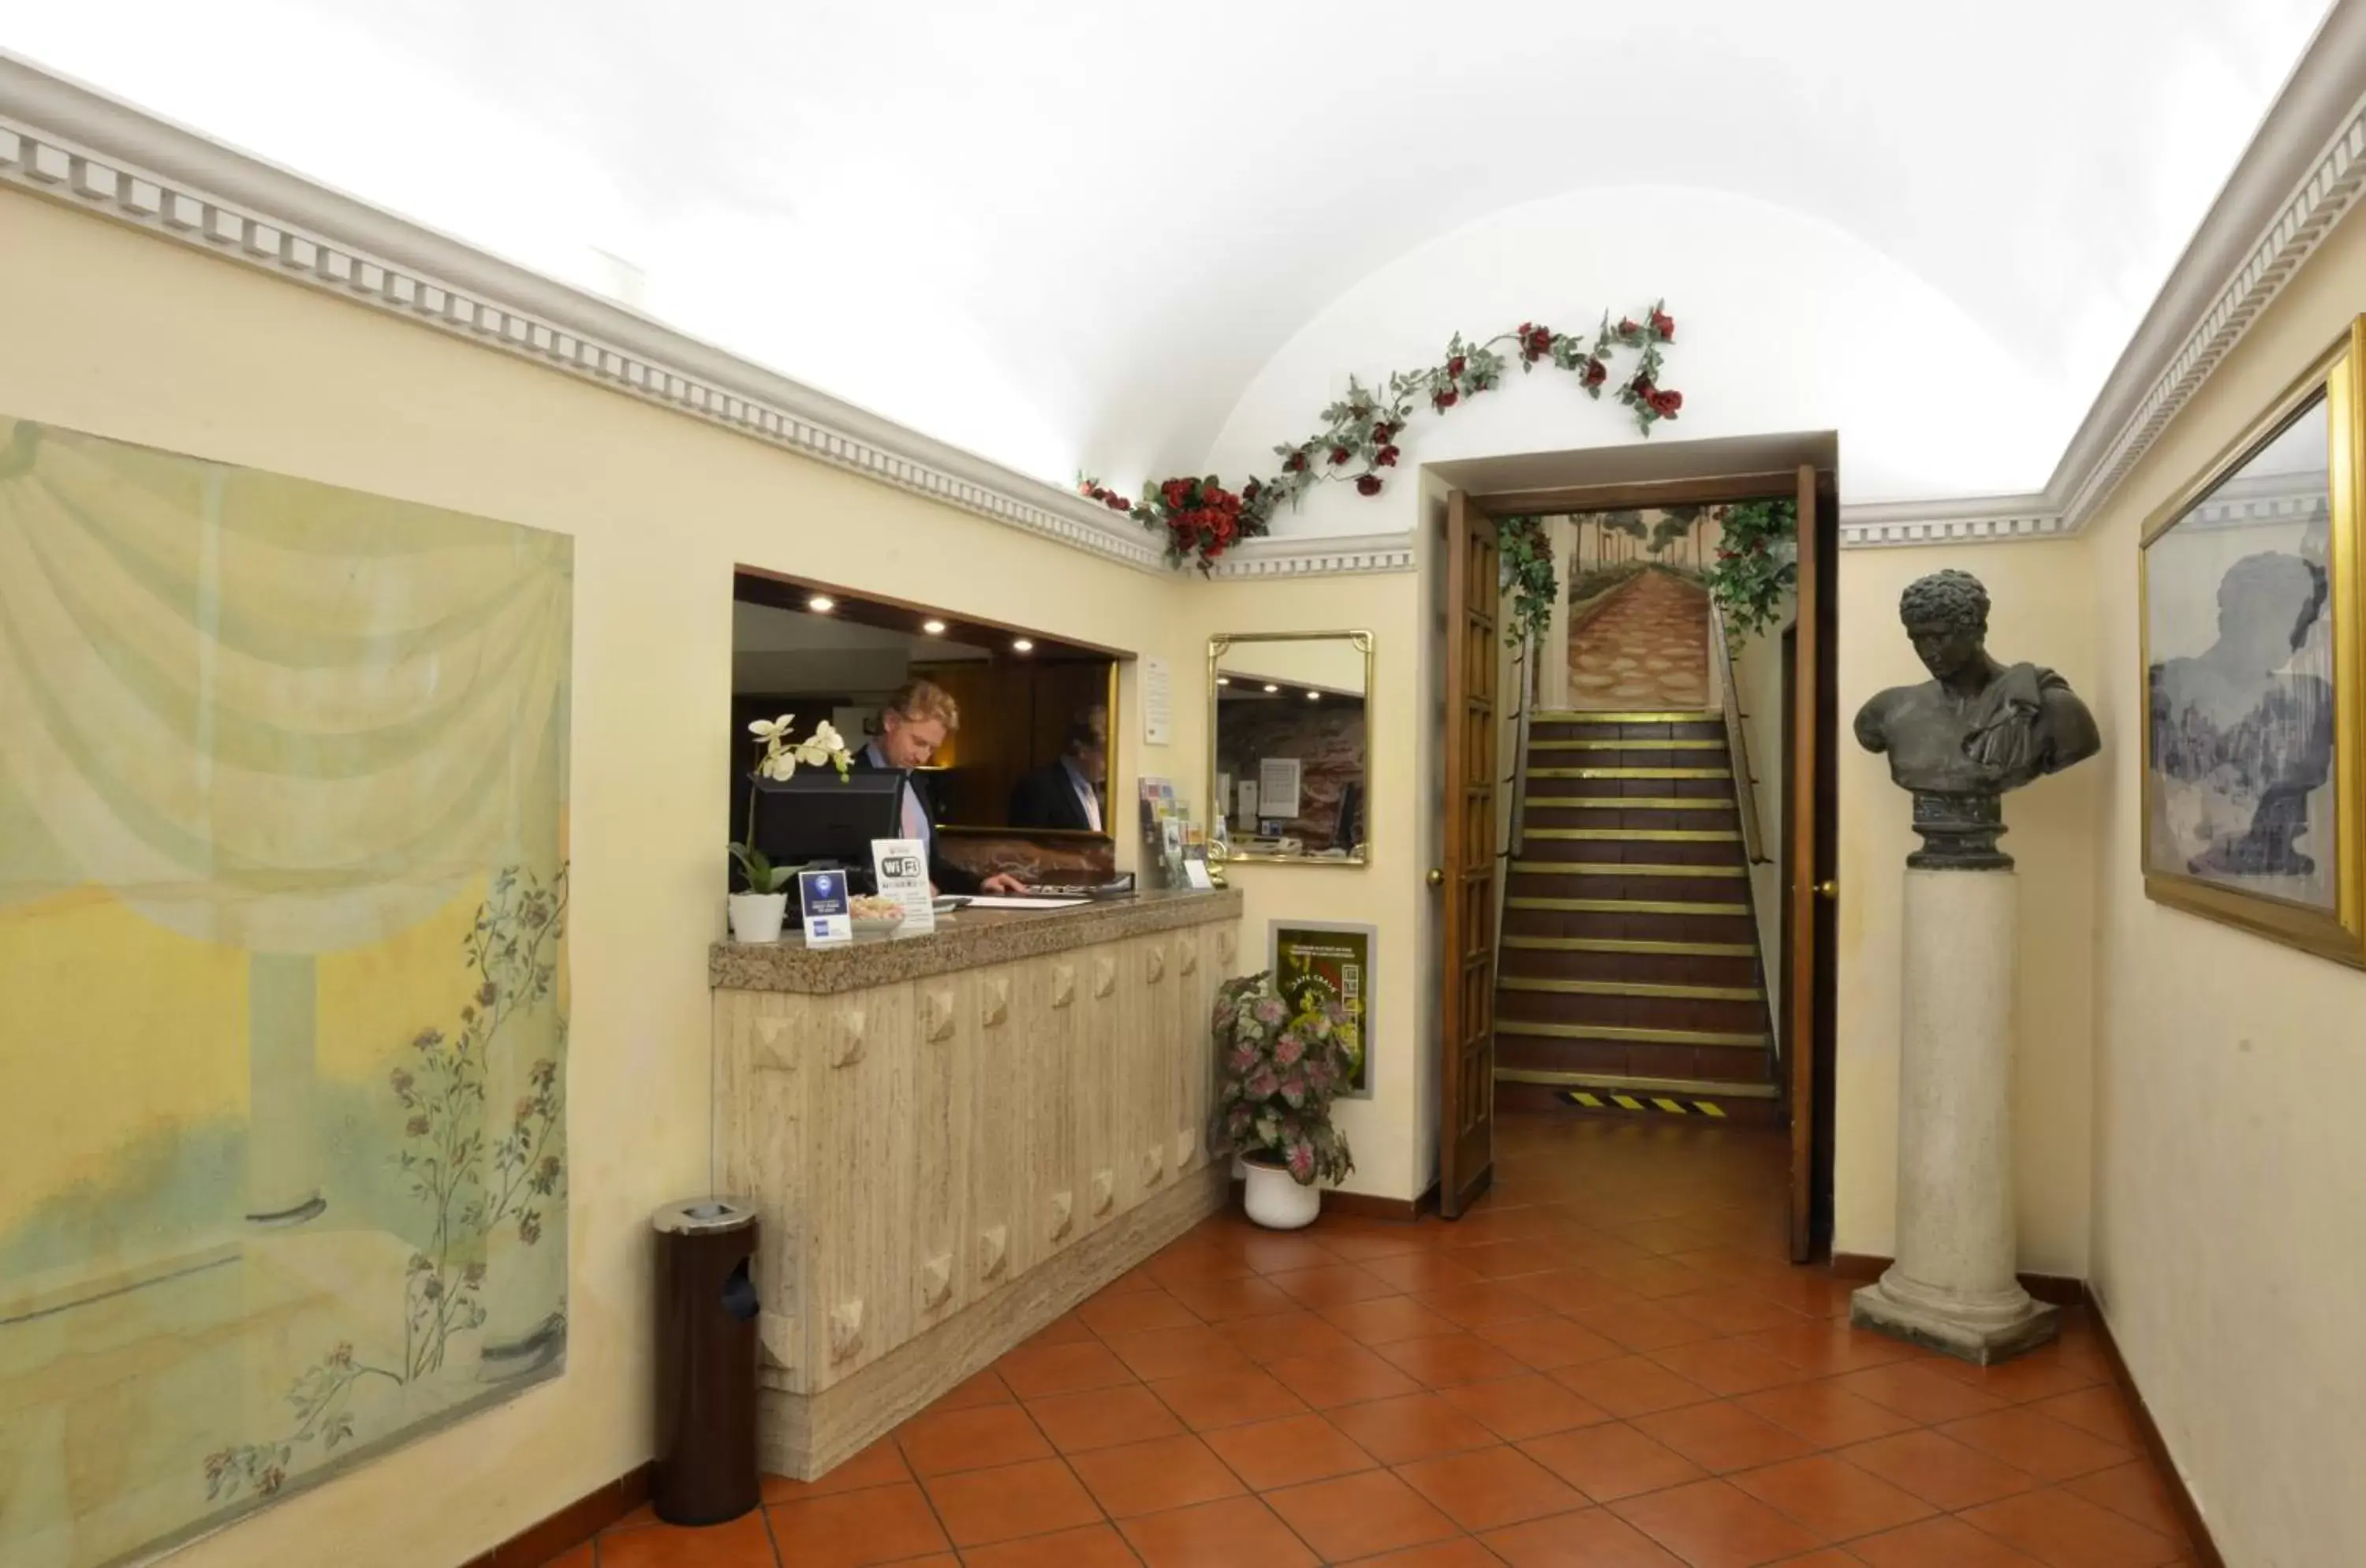 Lobby or reception, Lobby/Reception in Hotel Tirreno